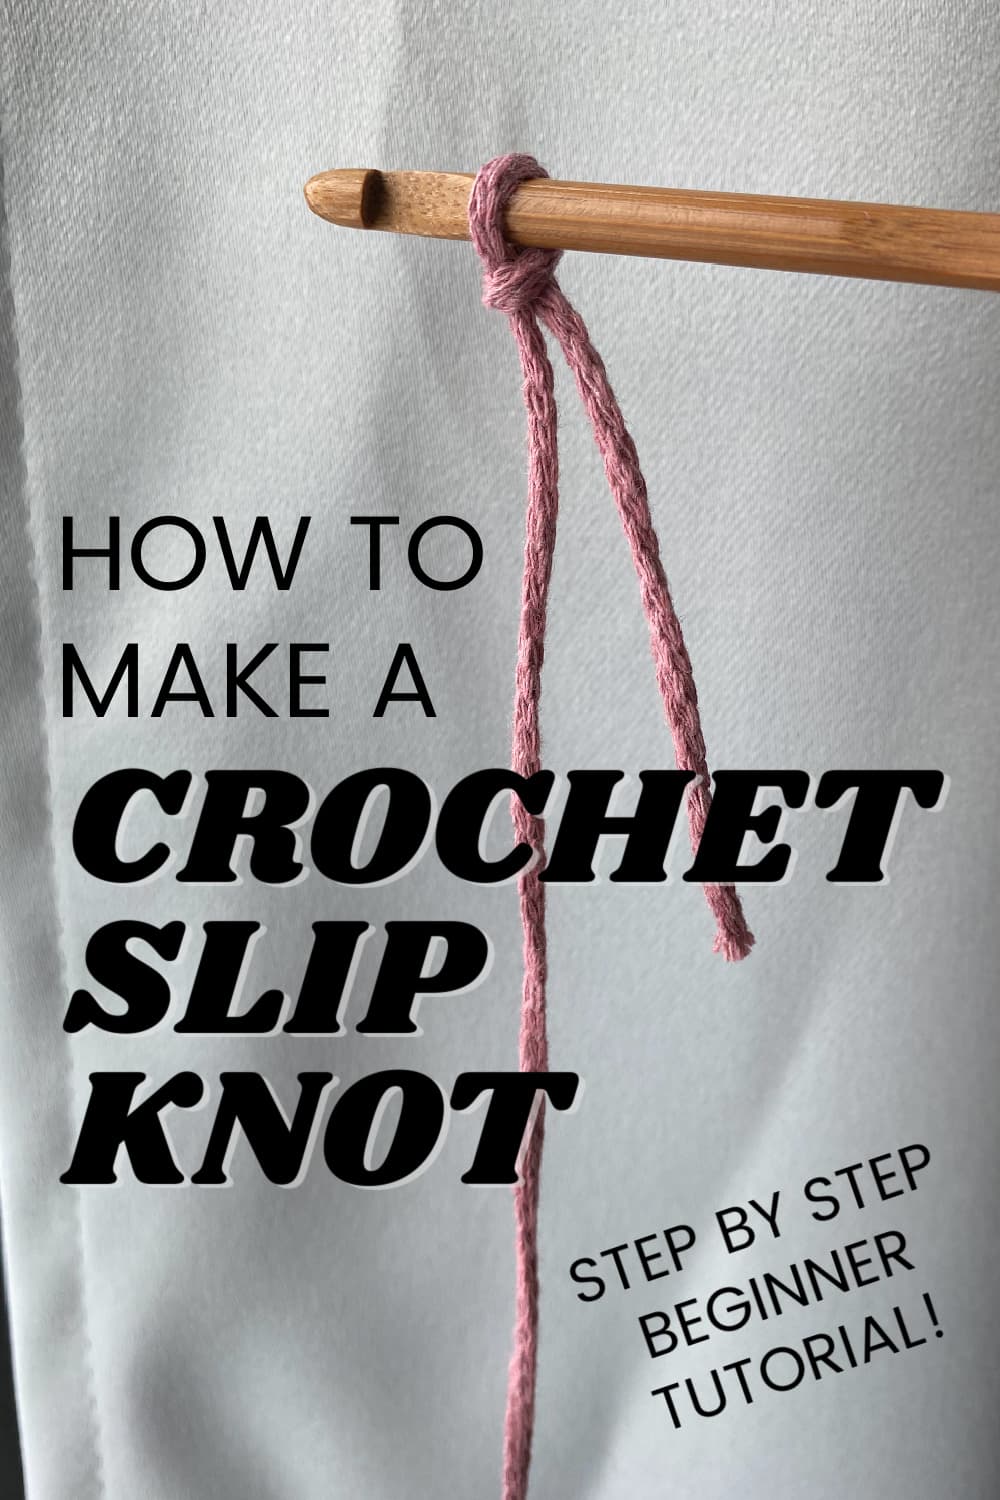 Slip Knot Crochet